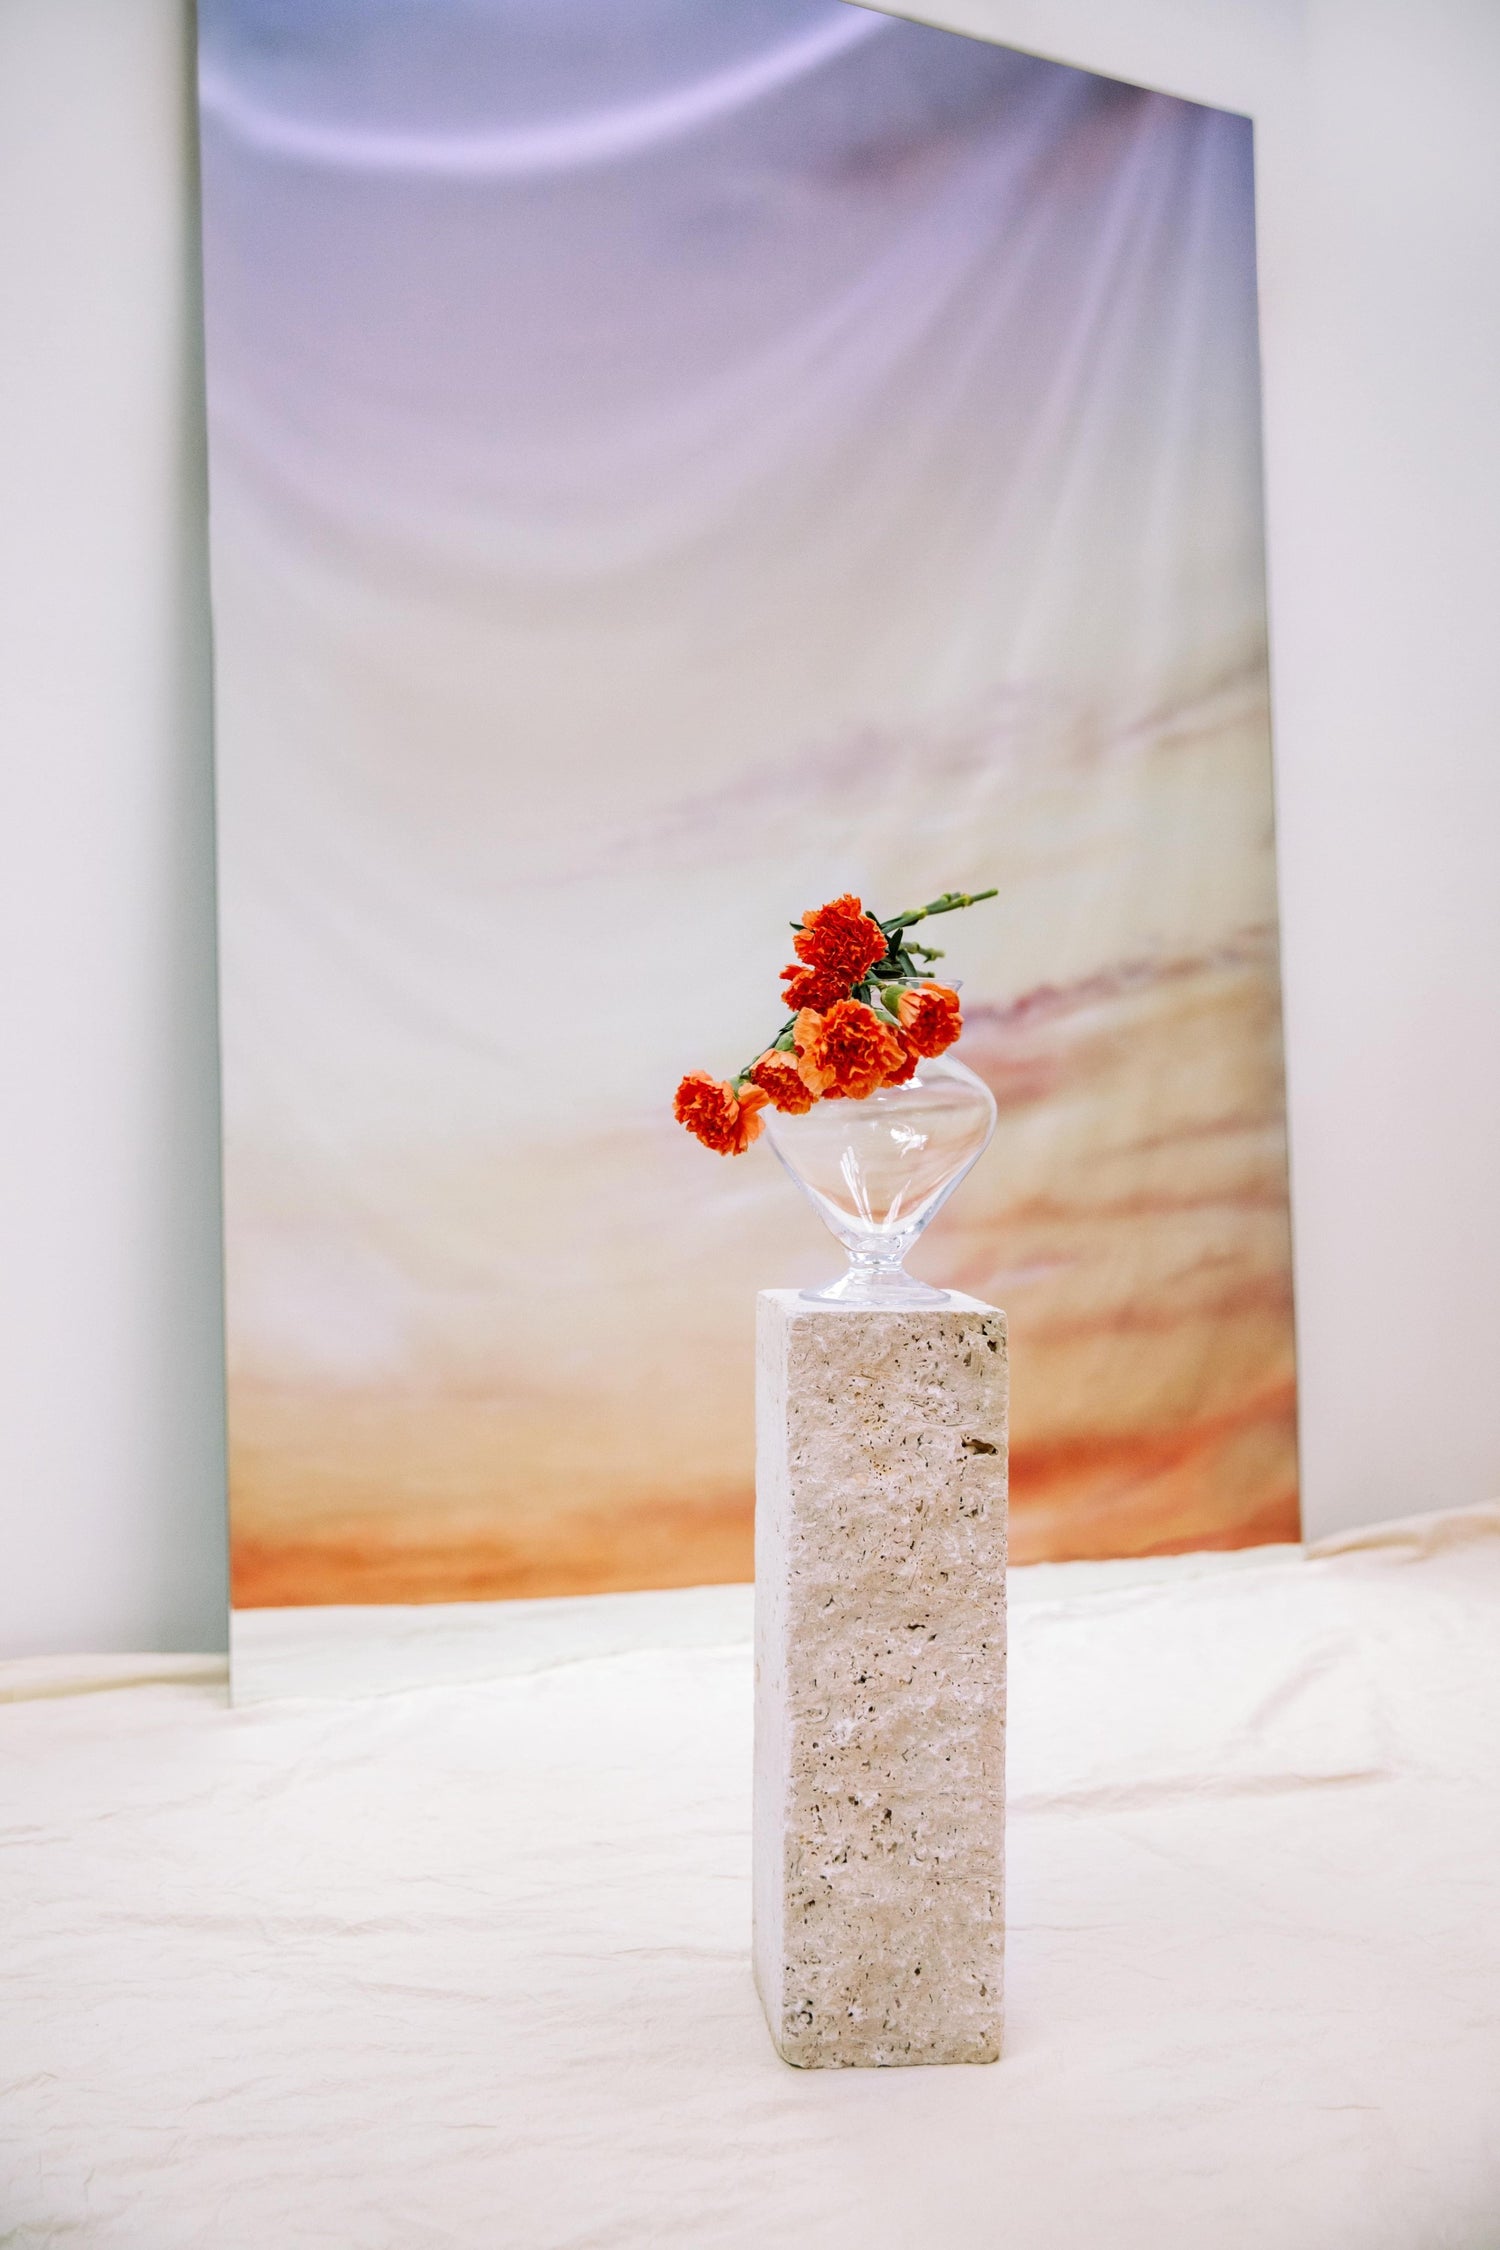 Eine Vase mit Blumen steht auf einer Säule. Im Hintergrund ist ein Spiegel zu sehen.